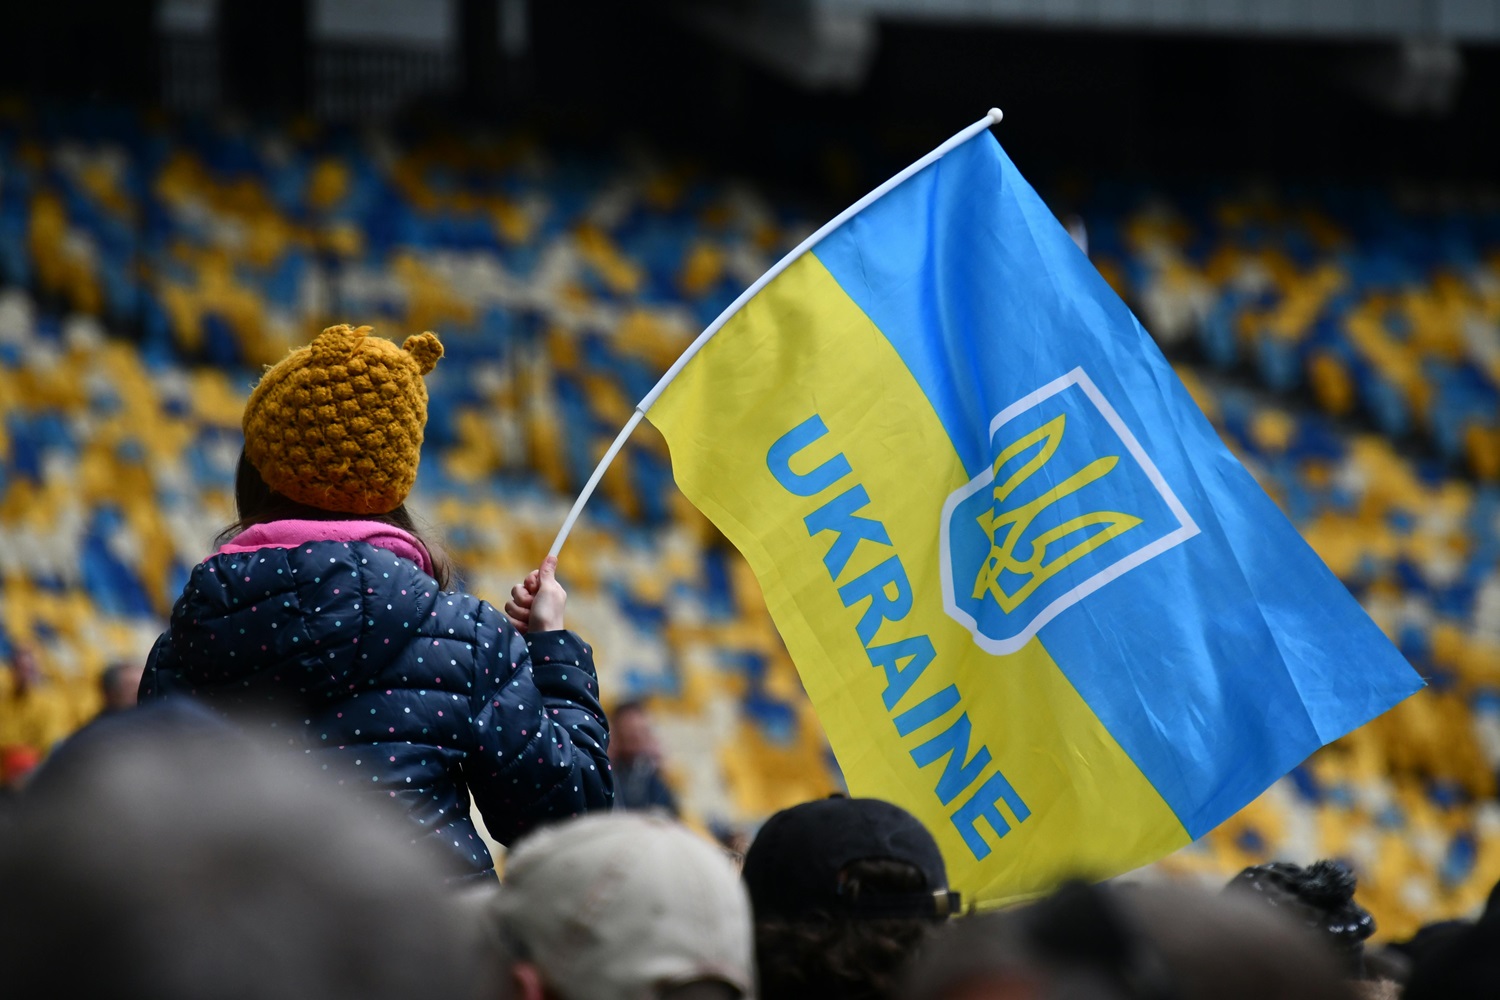 Lietuva planuoja kasmet Ukrainai skirti 0,25 BVP siekiančią paramą